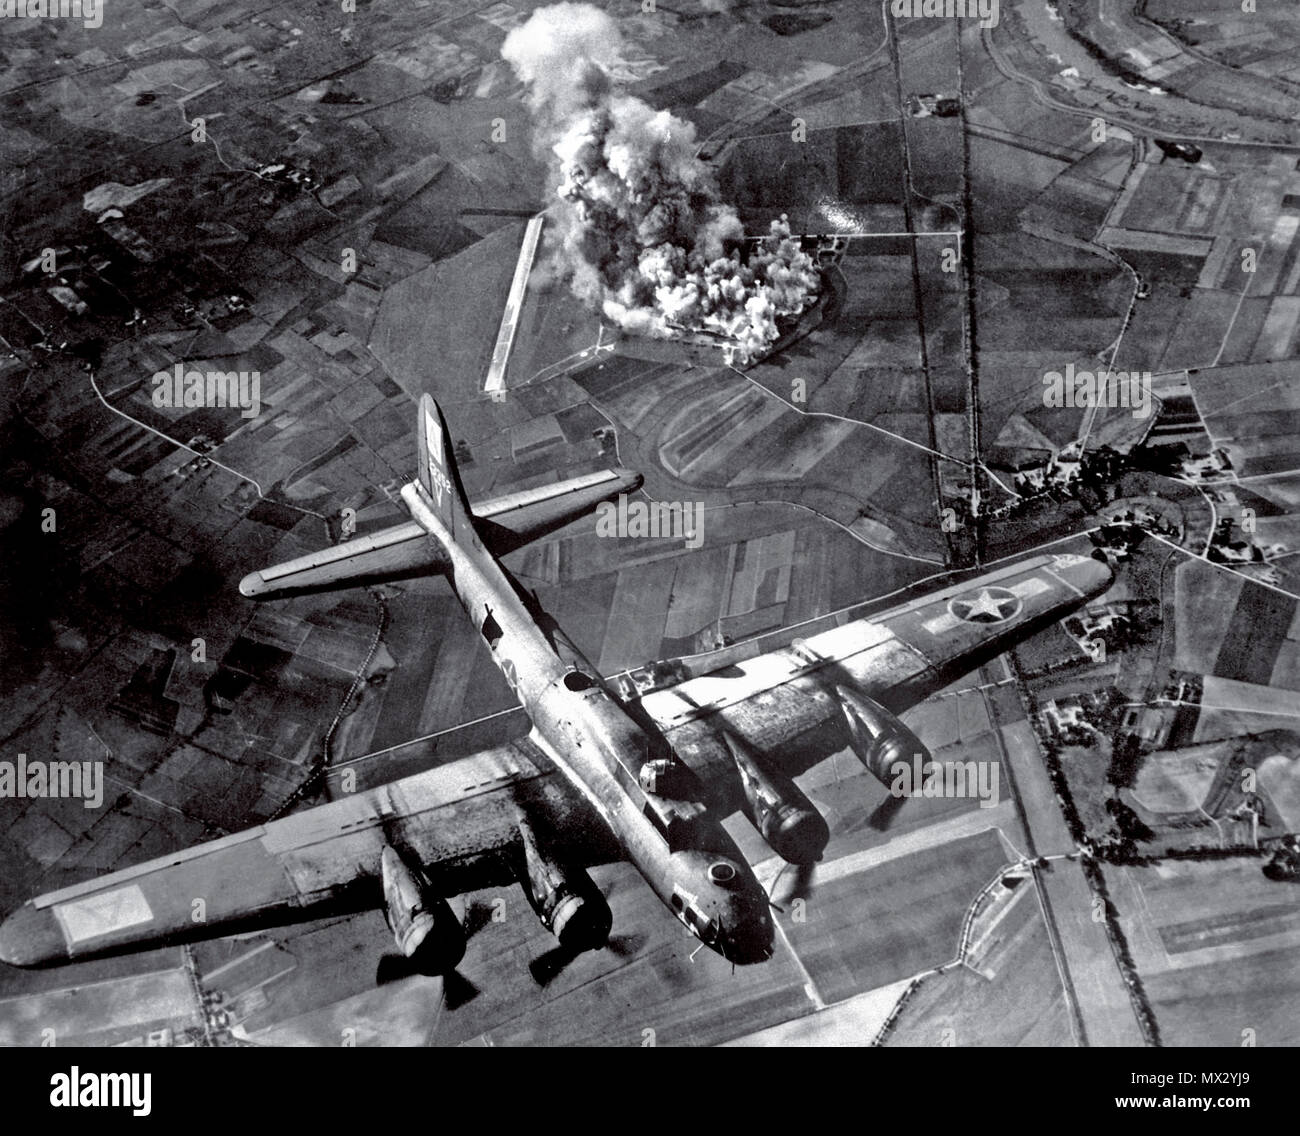 BOMBARDAMENTO di B-17 Germania nazista WW2 bombardamento di un B-17 Flying Fortress dell'American 8th Air Force su un impianto di produzione di aerei Focke Wulf a Marienburg Germania 1943. Questo notevole bombardamento aereo della seconda guerra mondiale è stato un successo totale obliterando completamente l'impianto con bombardieri puntati Foto Stock